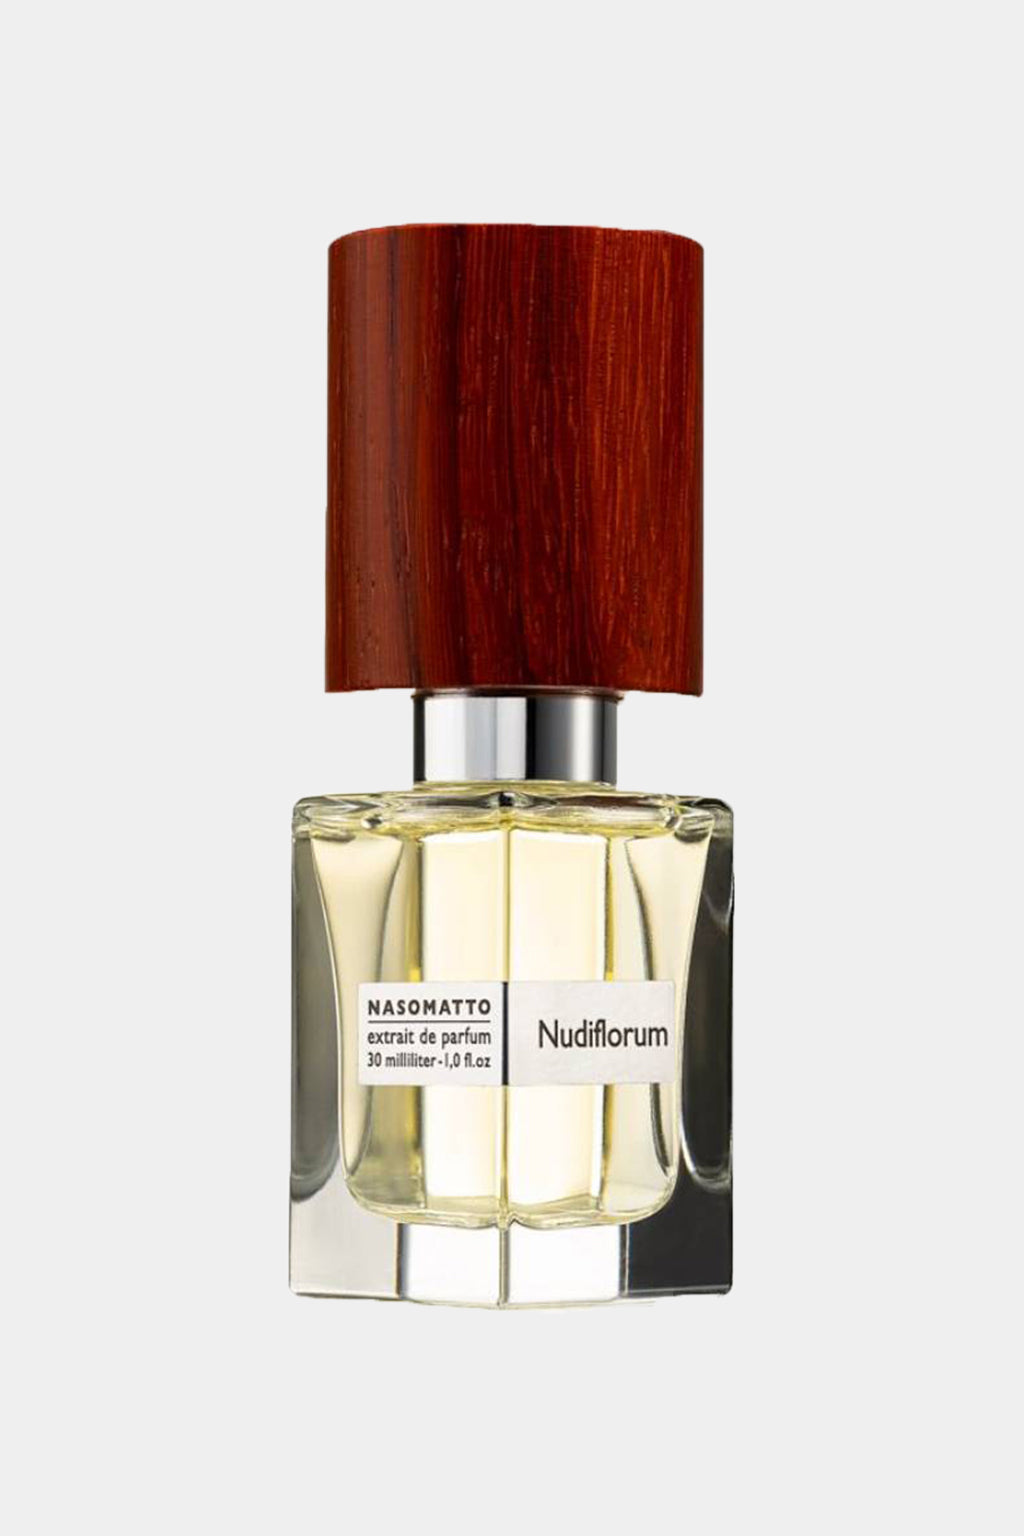 Nasomatto - Nudiflorum Eau de Parfum